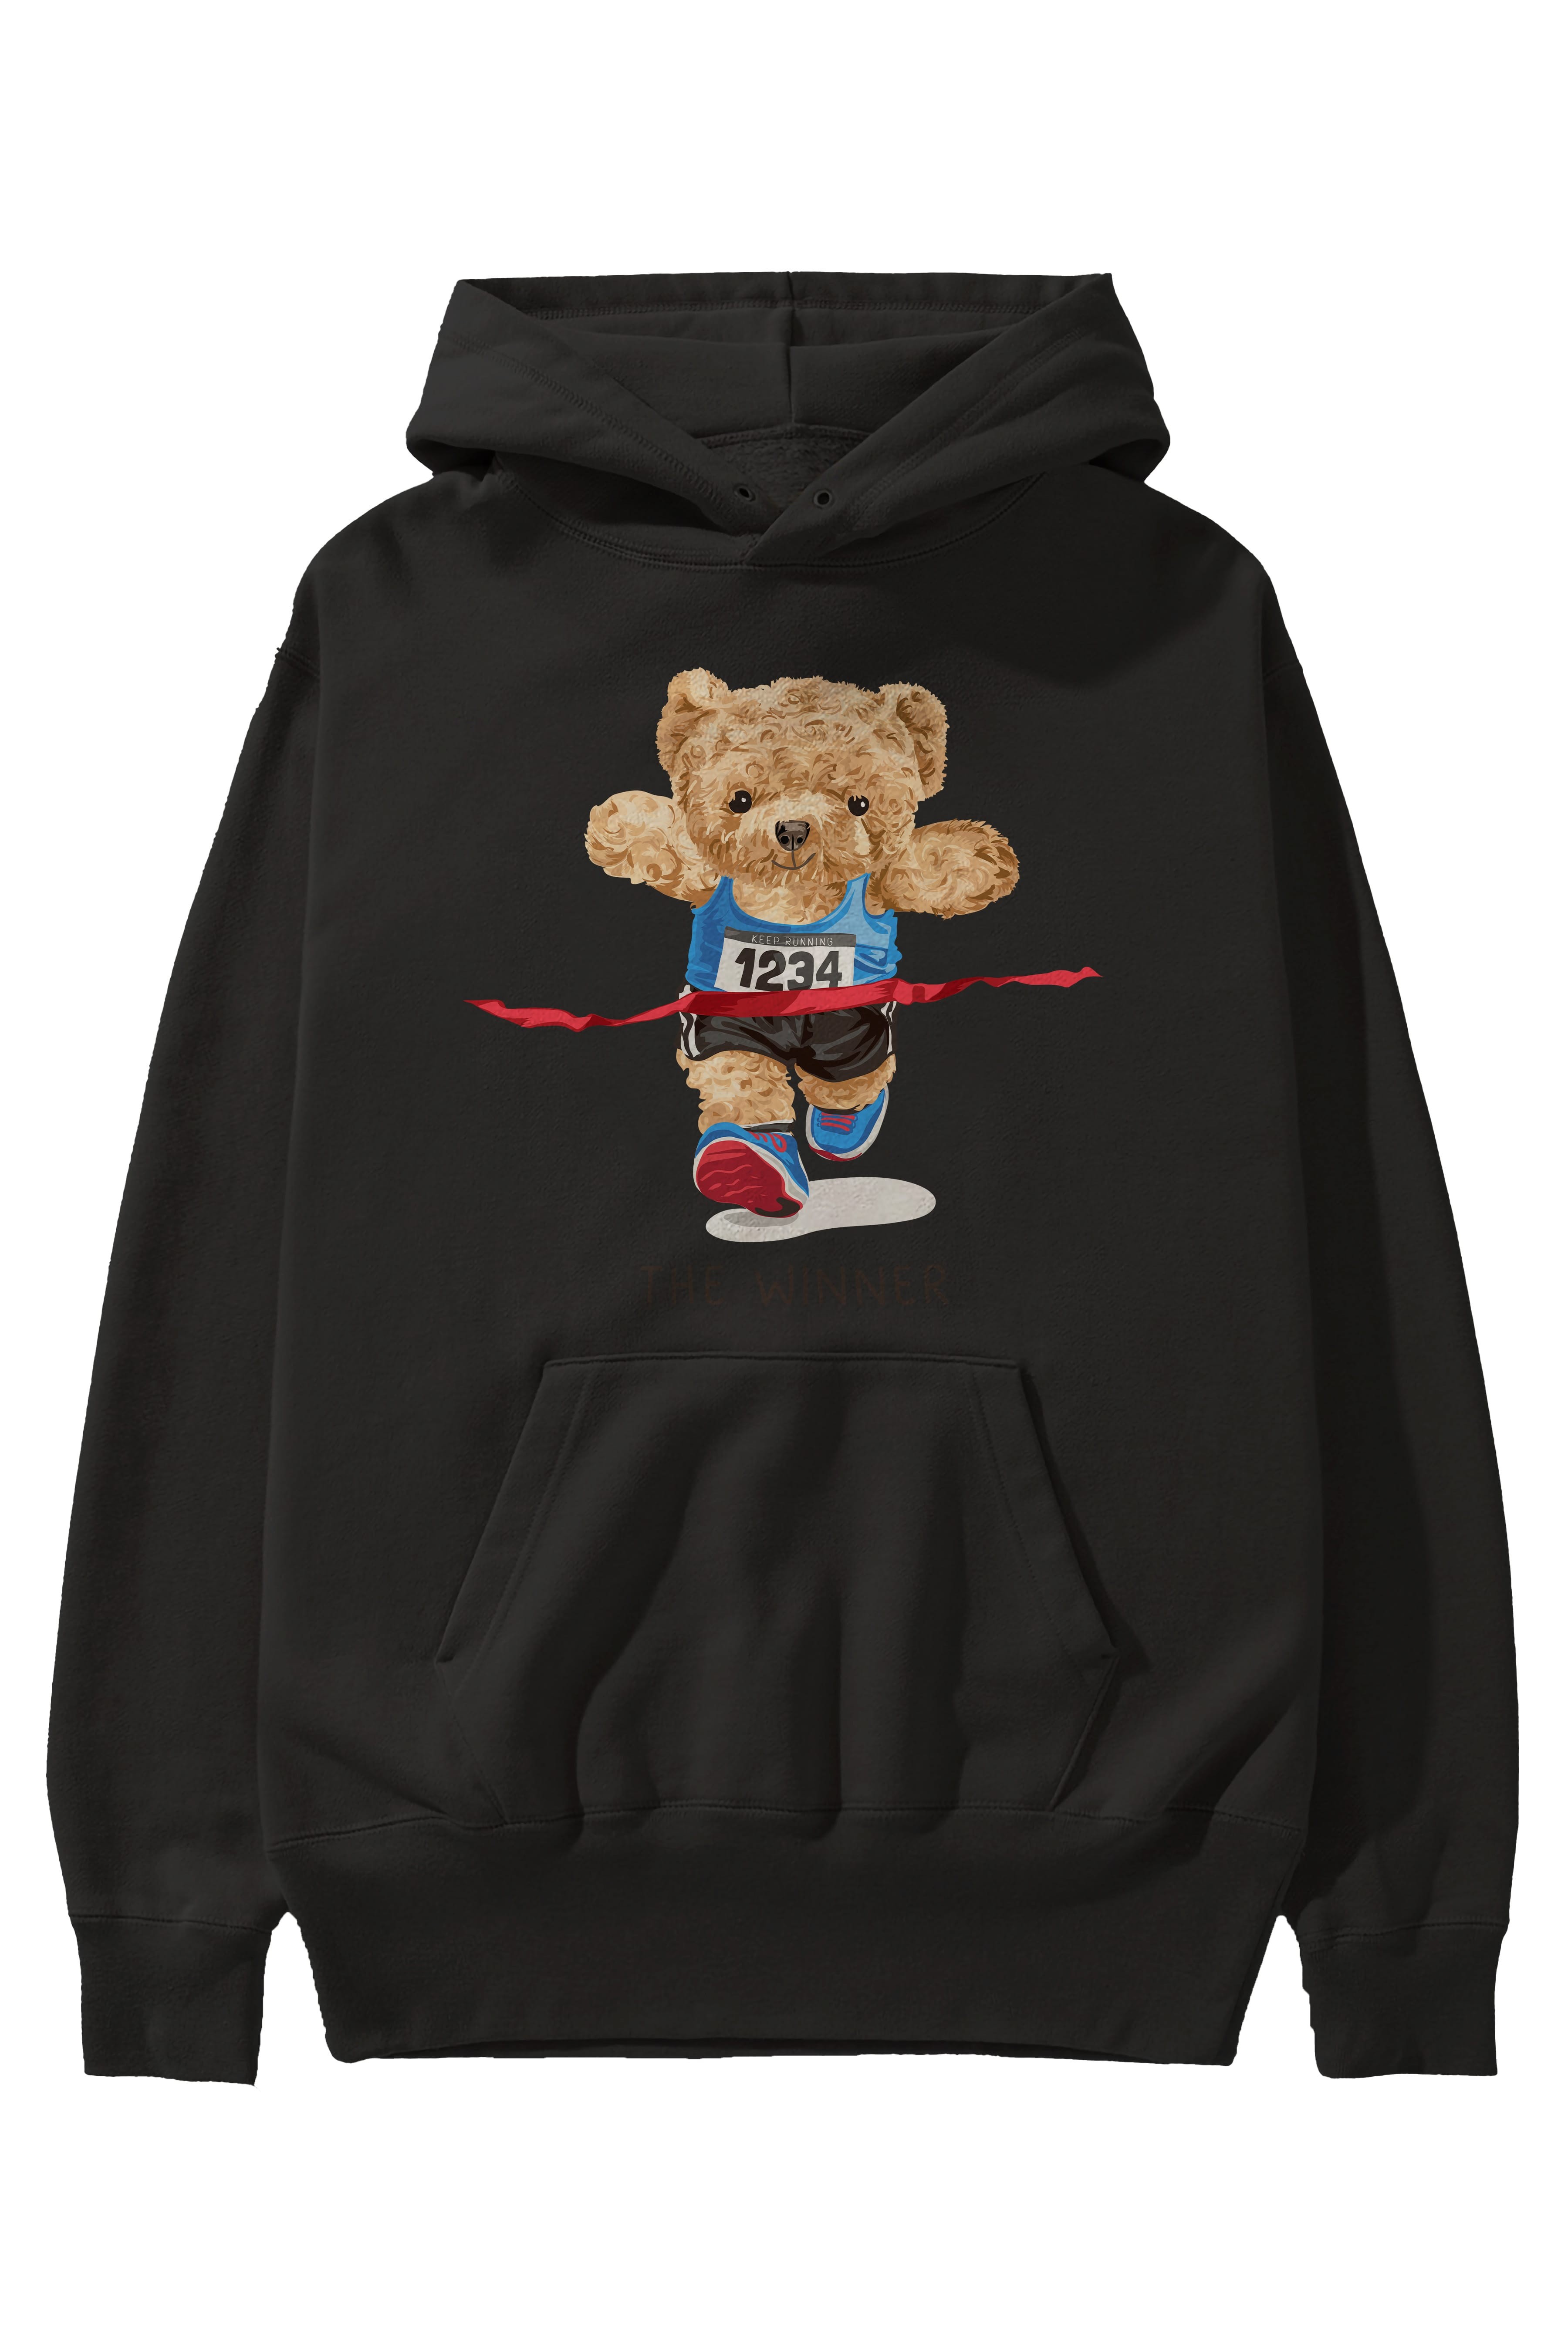 Teddy Bear The Winner Ön Baskılı Hoodie Oversize Kapüşonlu Sweatshirt Erkek Kadın Unisex